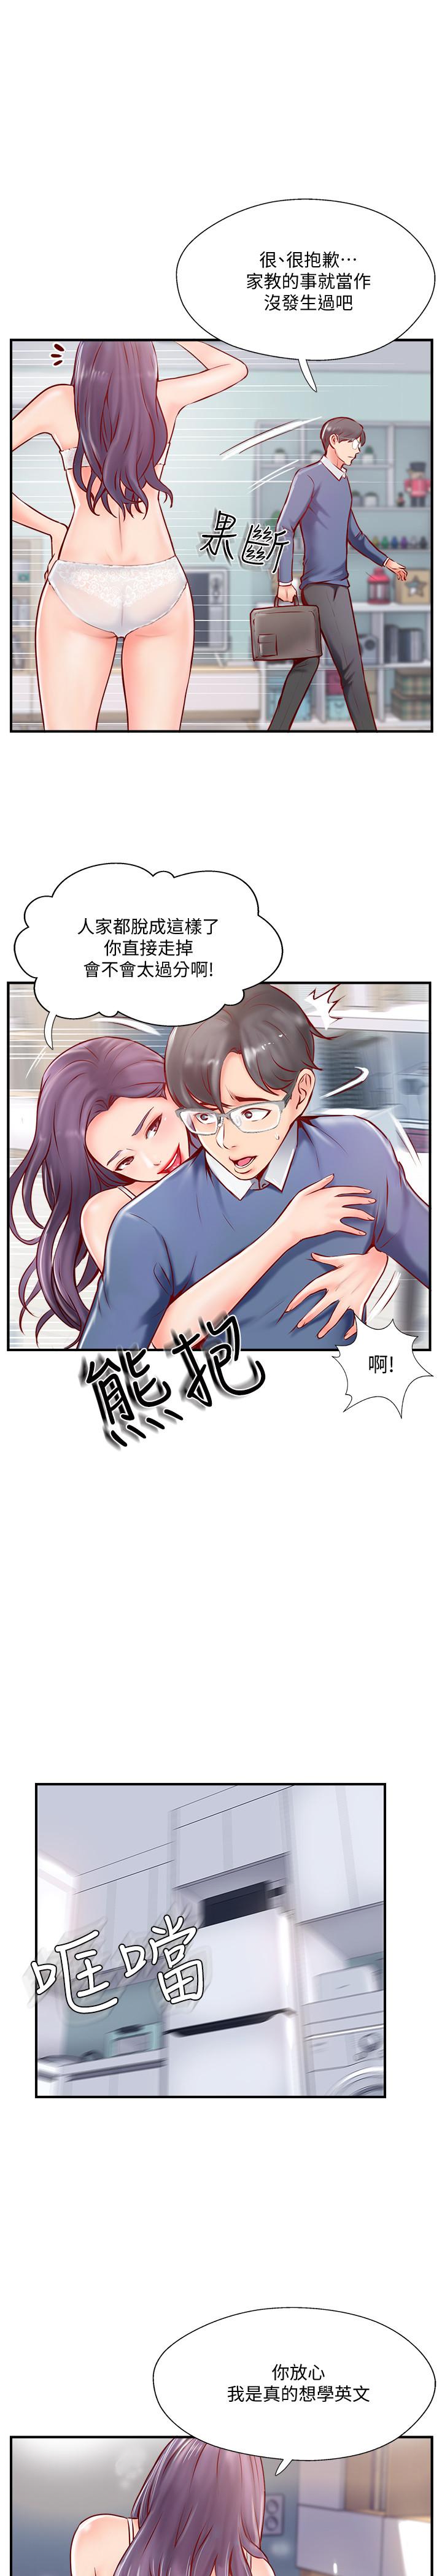 韩国污漫画 完美新伴侶 第6话-我想深入了解老师 45